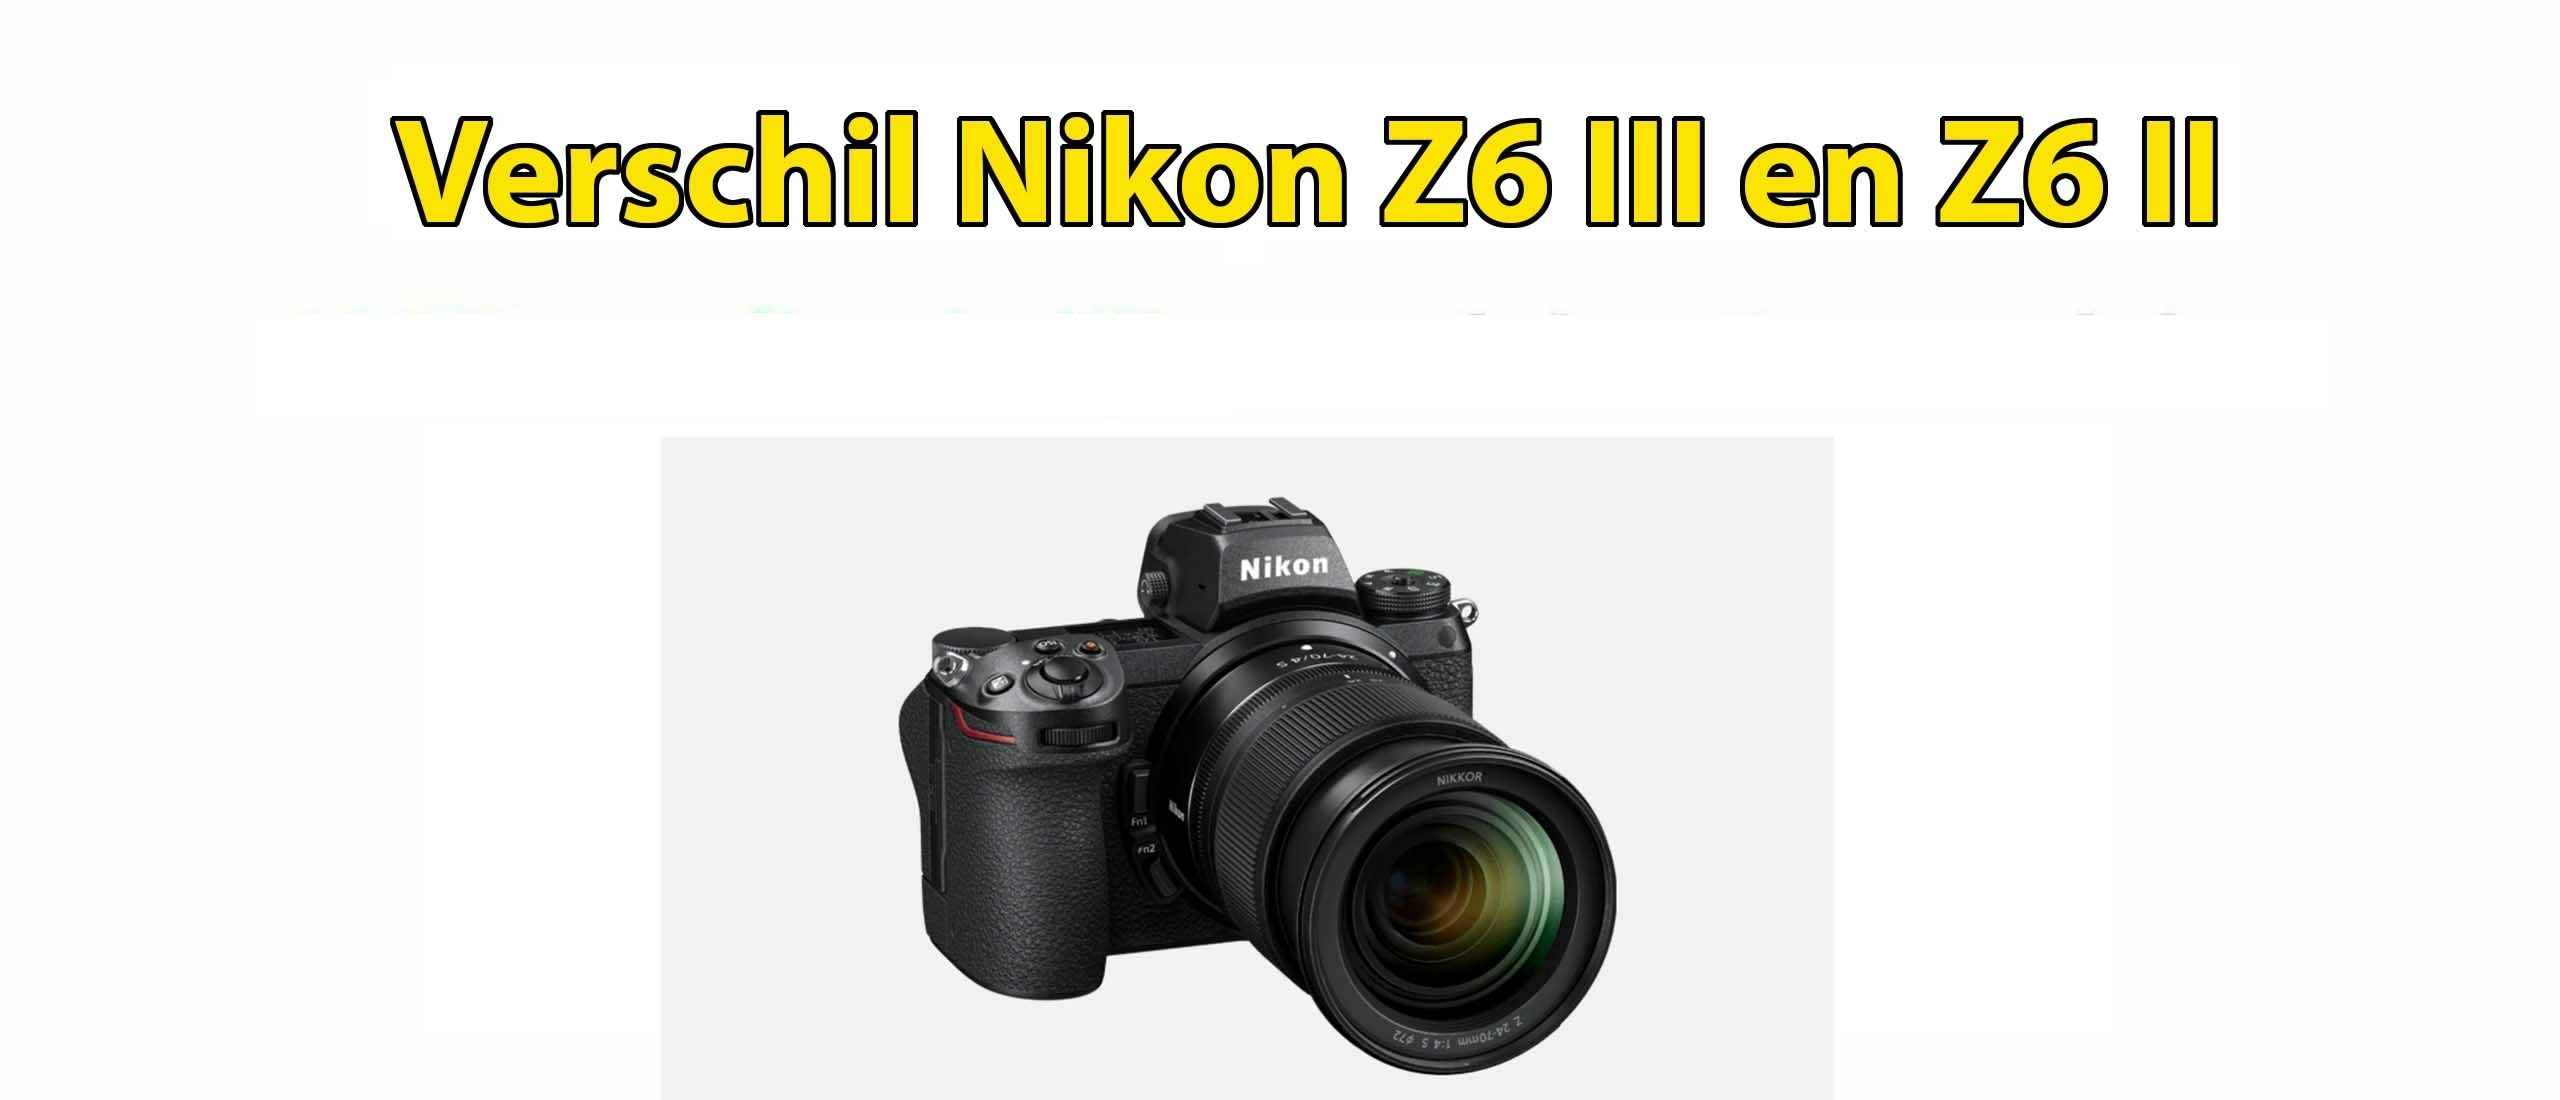 Verschil Nikon Z6 II en Z6 III Systeemcamera